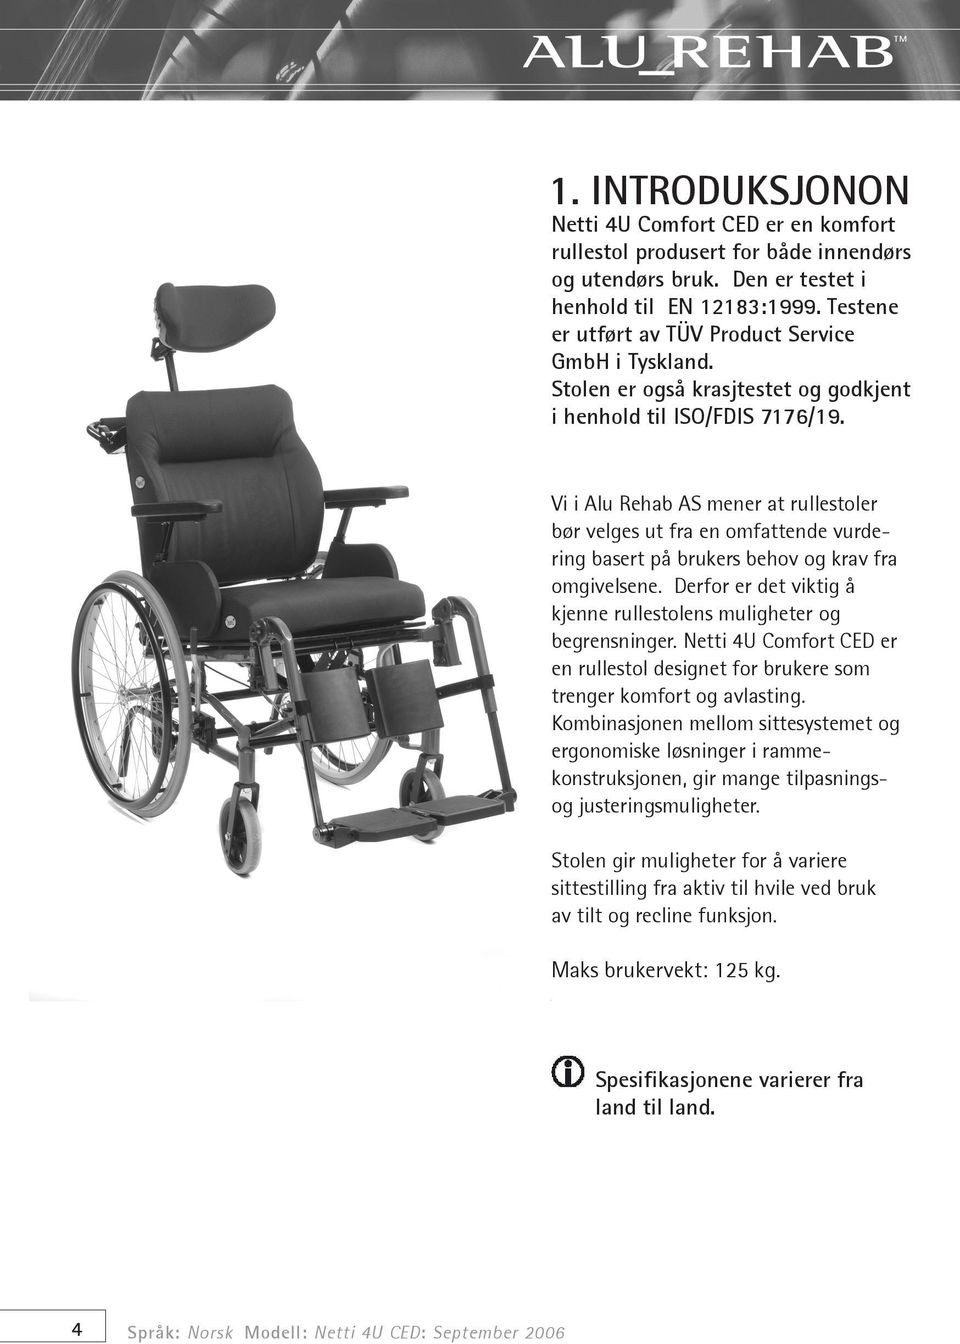 Vi i Alu Rehab AS mener at rullestoler bør velges ut fra en omfattende vurdering basert på brukers behov og krav fra omgivelsene.